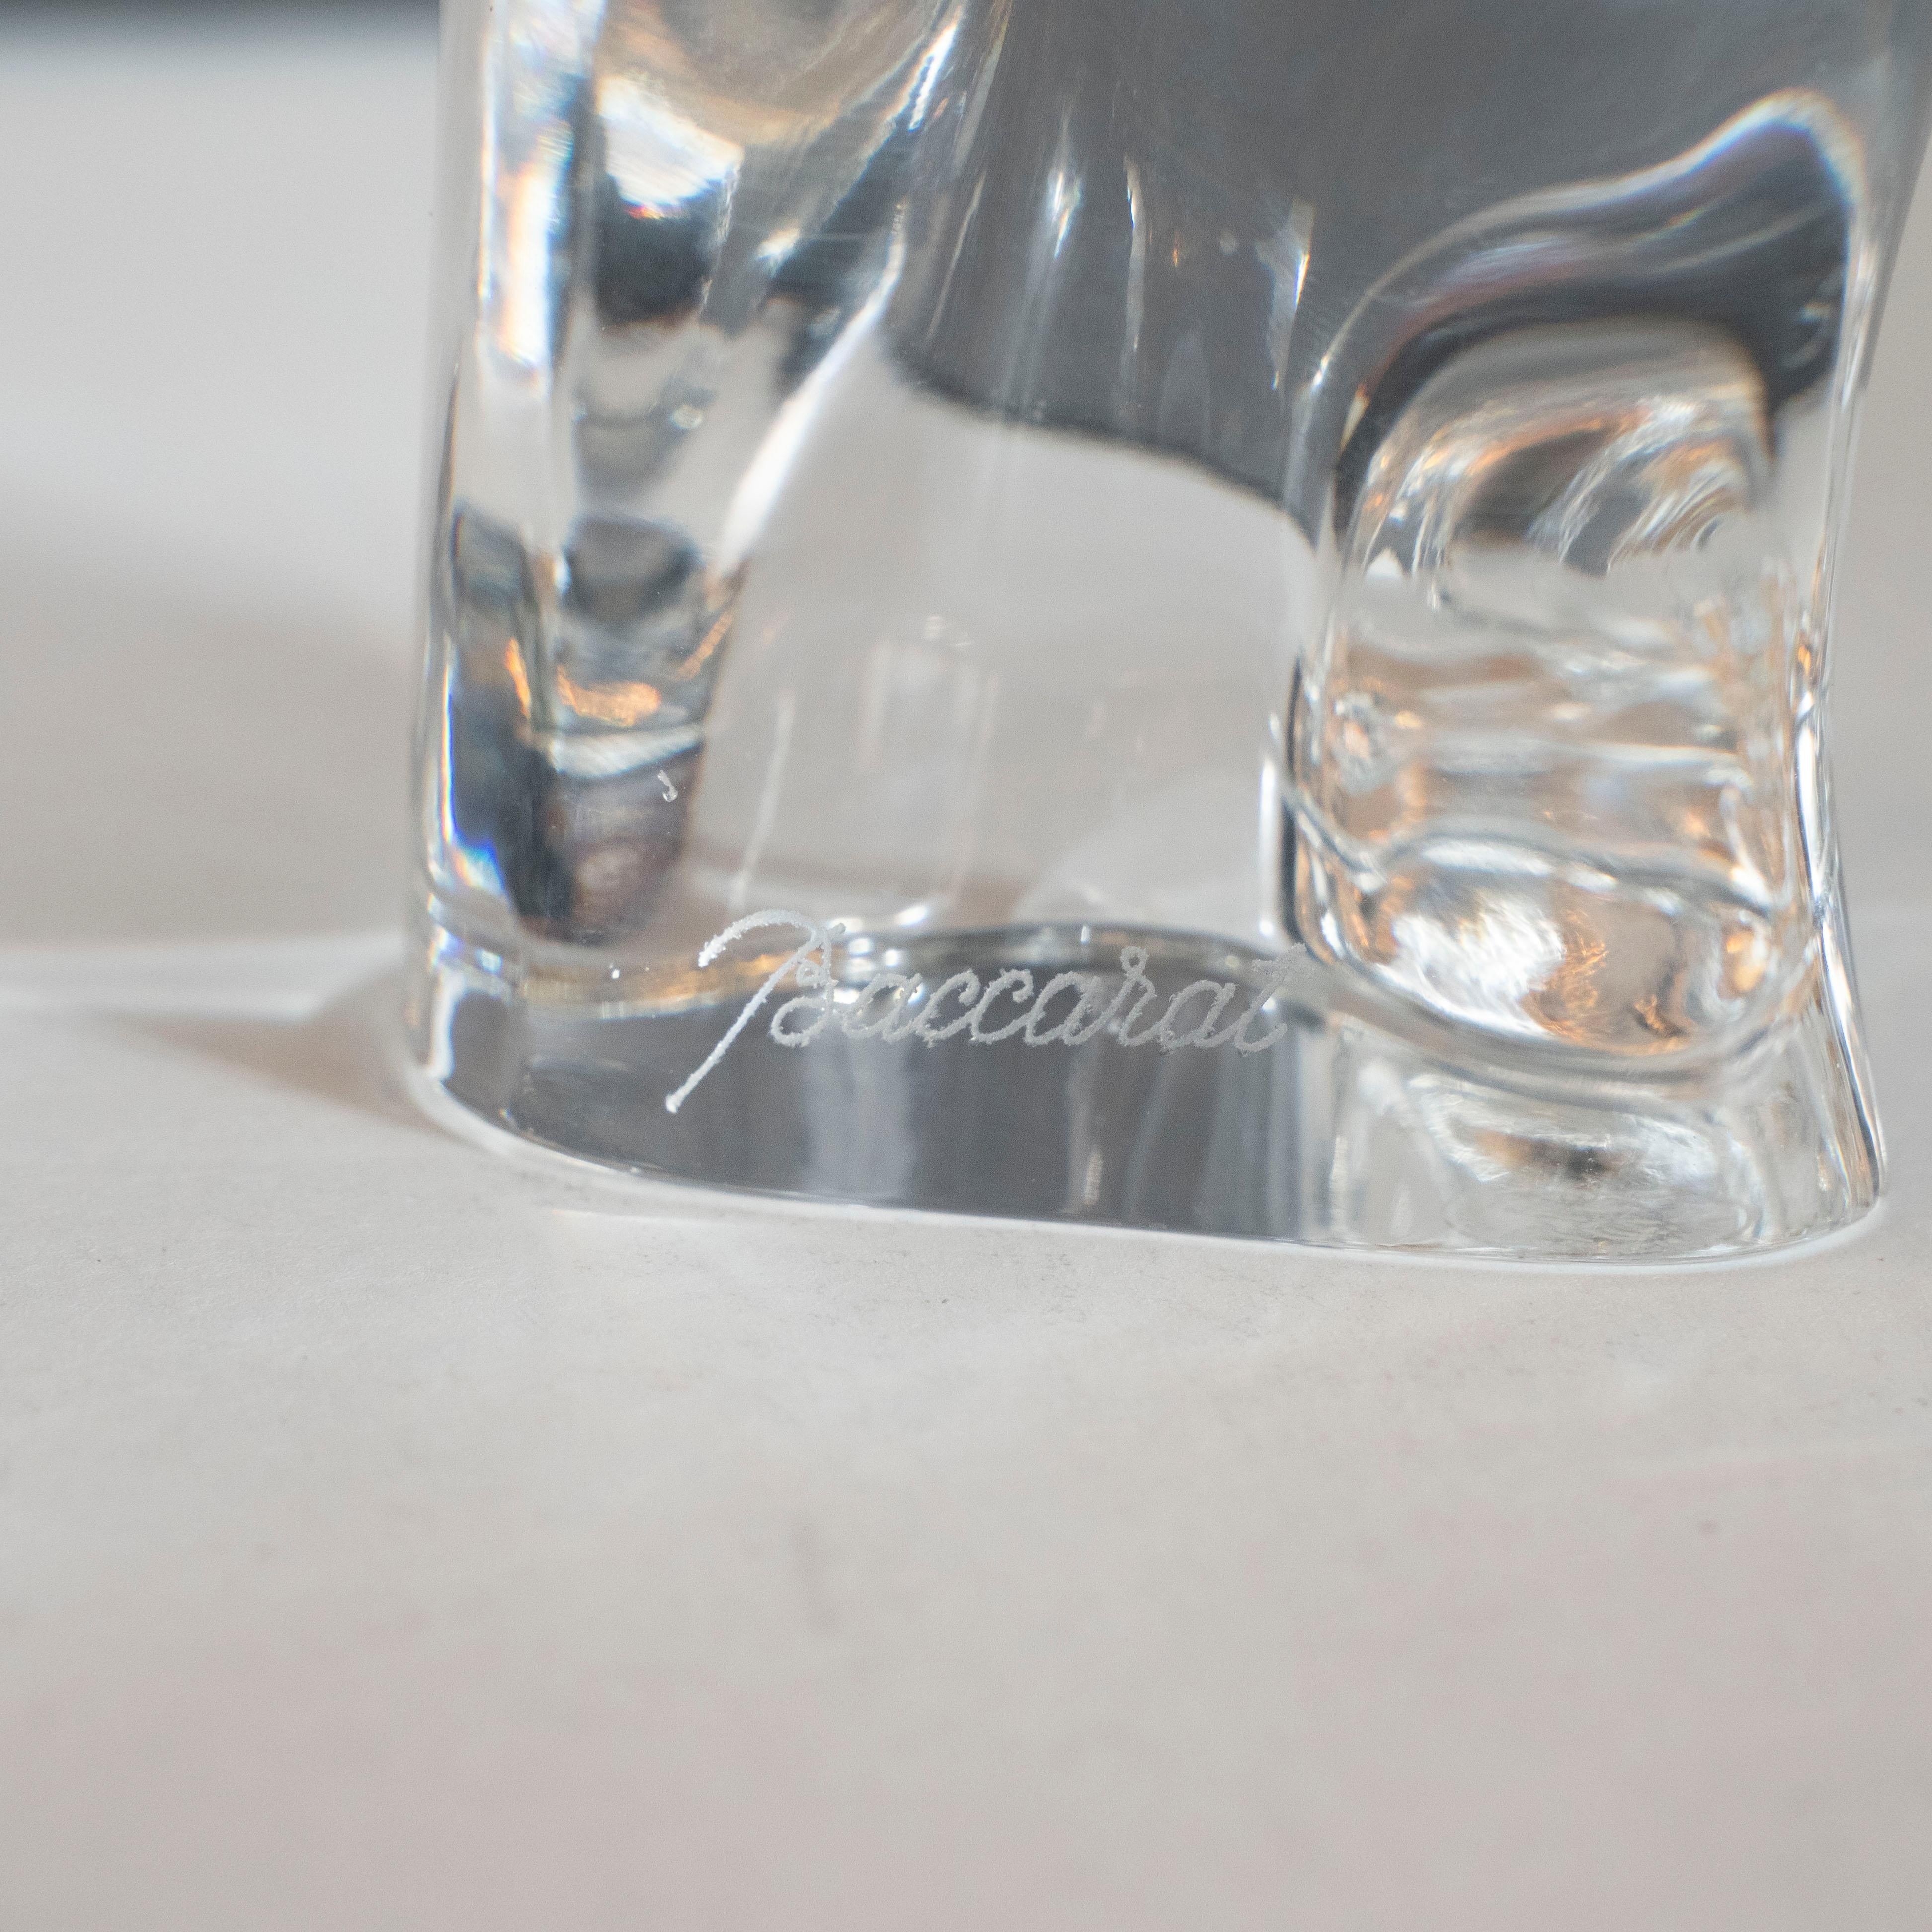 Cet élégant presse-papiers a été réalisé par Baccarat - l'un des meilleurs fabricants de produits en cristal au monde depuis 1765 en France, vers 1960. Créée artisanalement en cristal translucide, la pièce suggère une chouette perchée stylisée. Avec